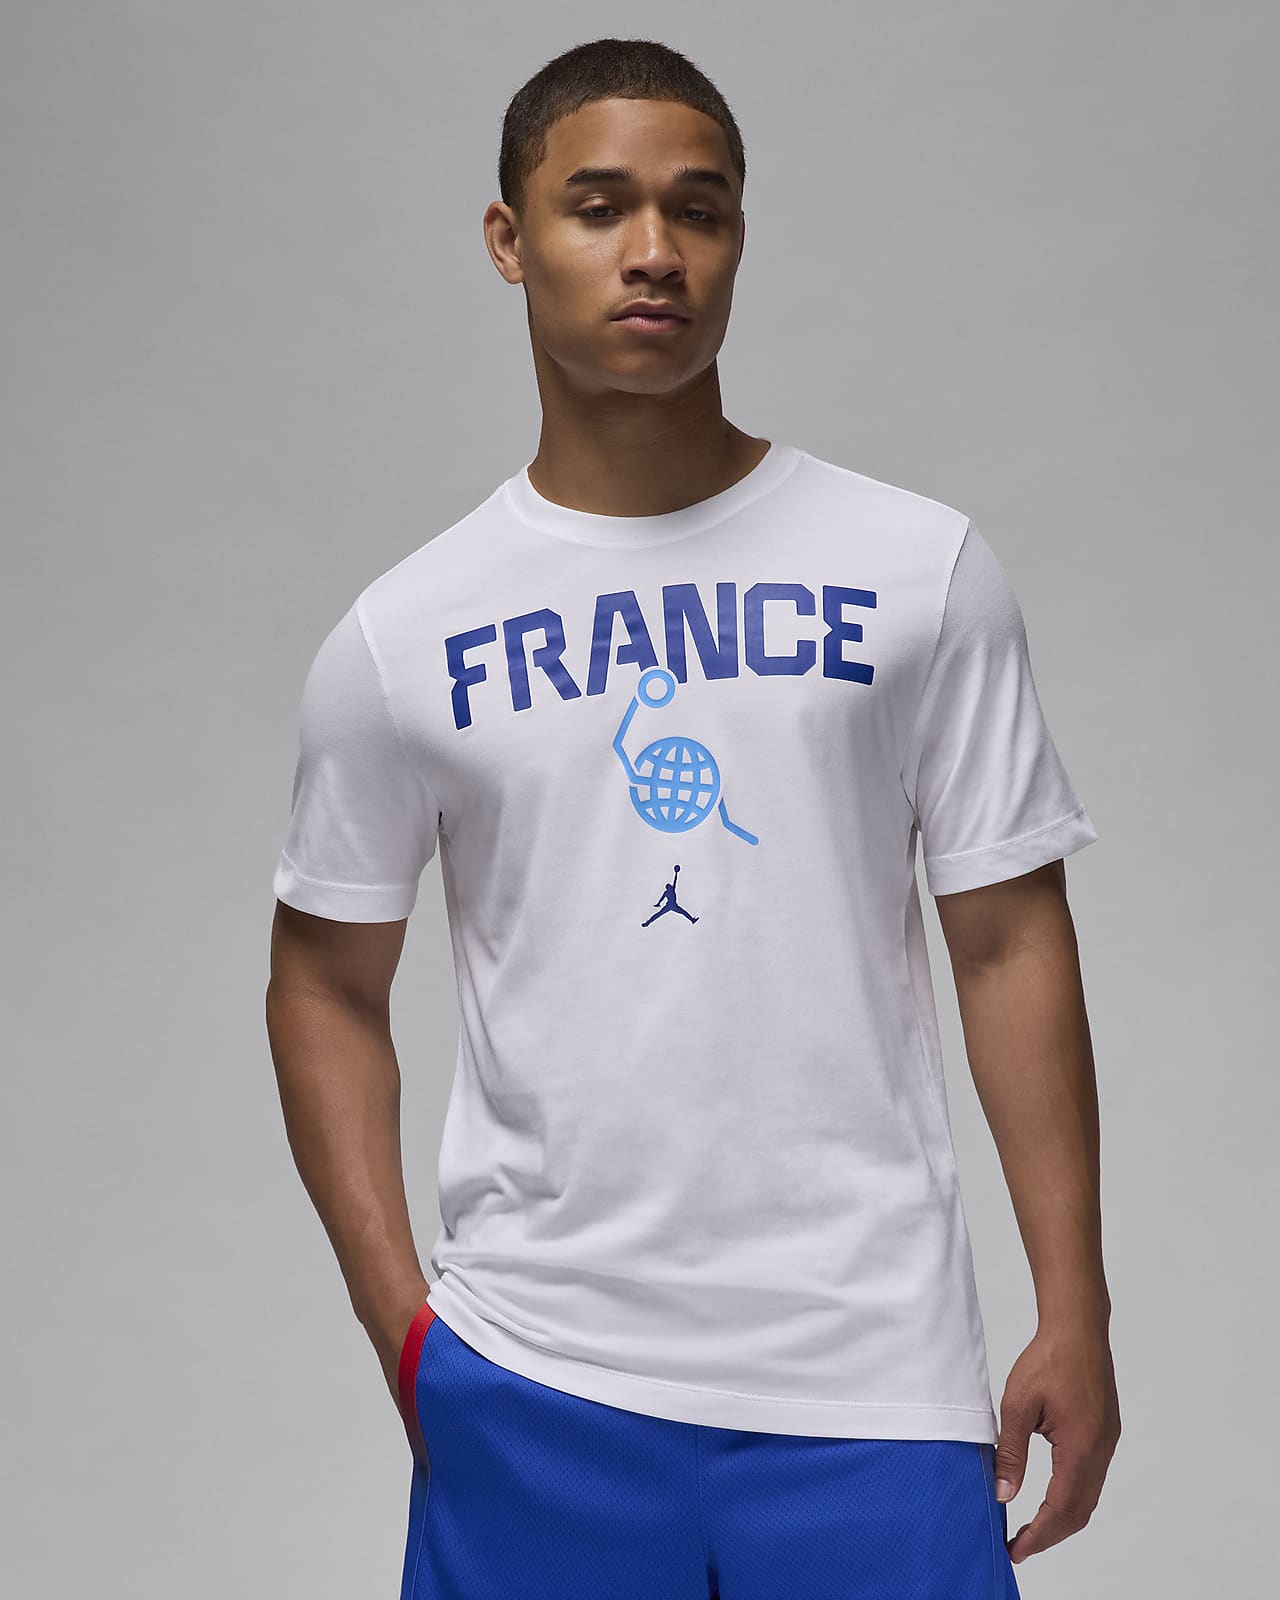 France Men's Nike Basketball T-Shirt